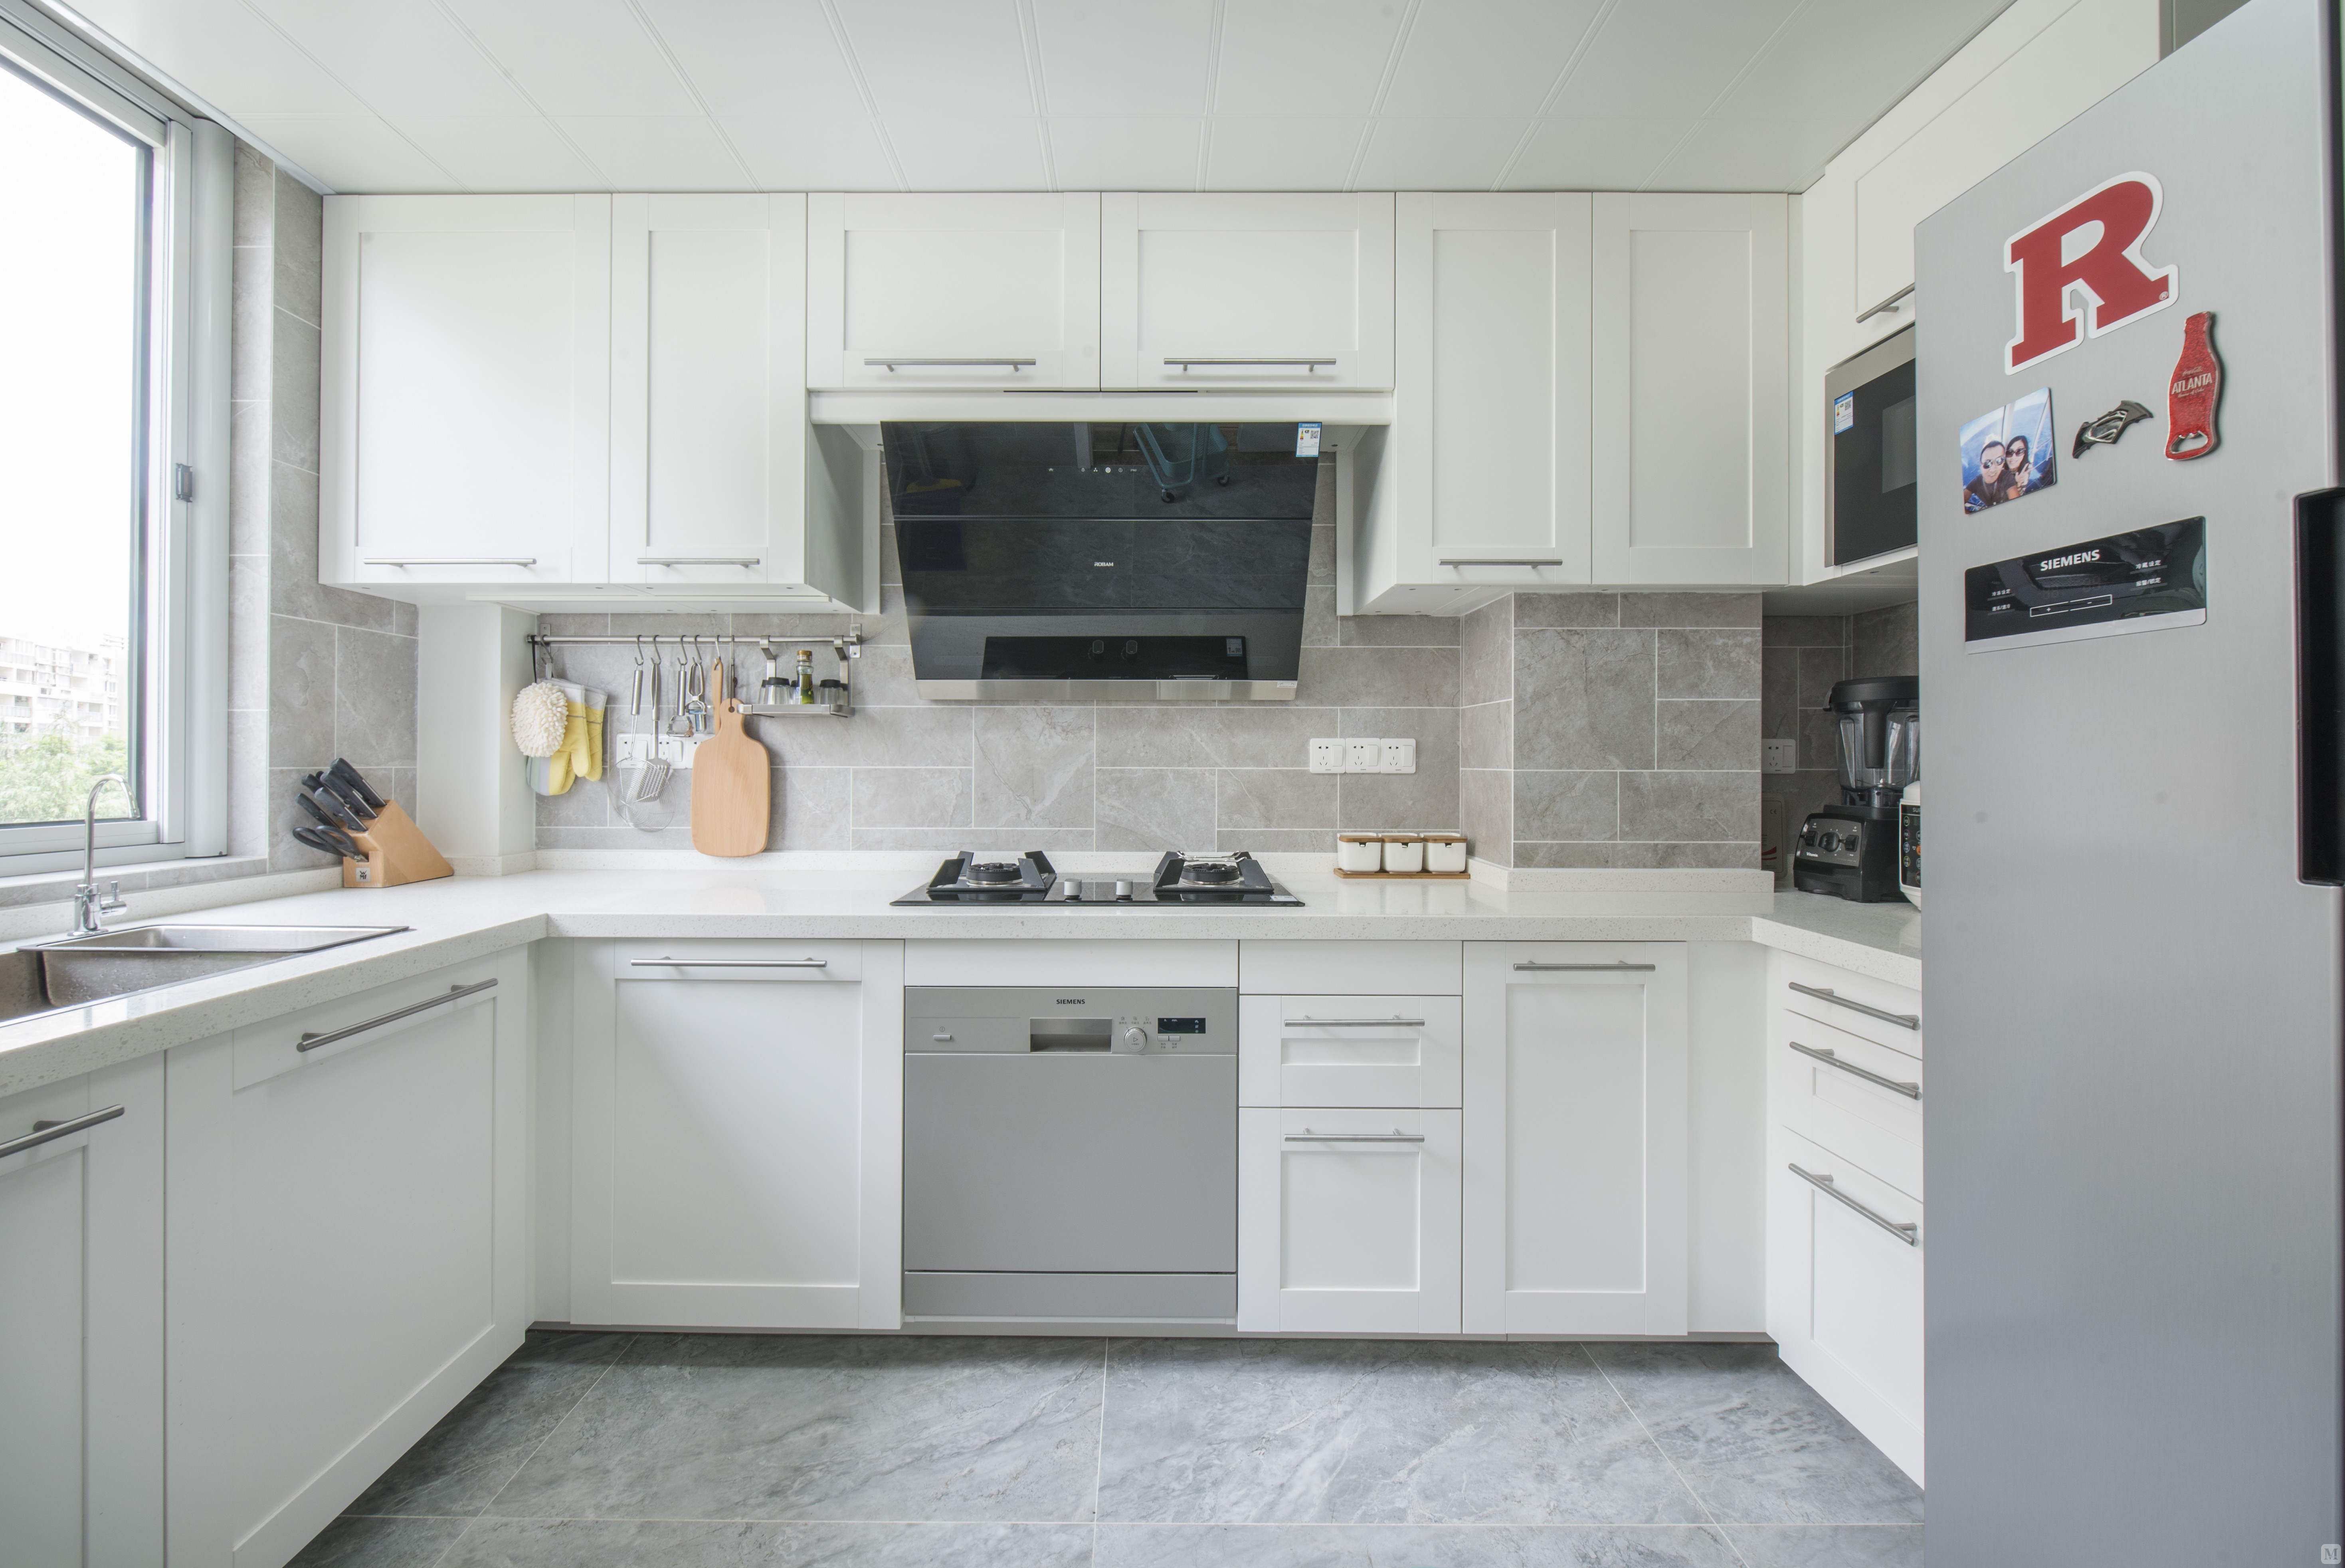 厨房选用灰色系墙地砖,墙砖是加工砖,考究贴砖师傅的手艺,与白色的